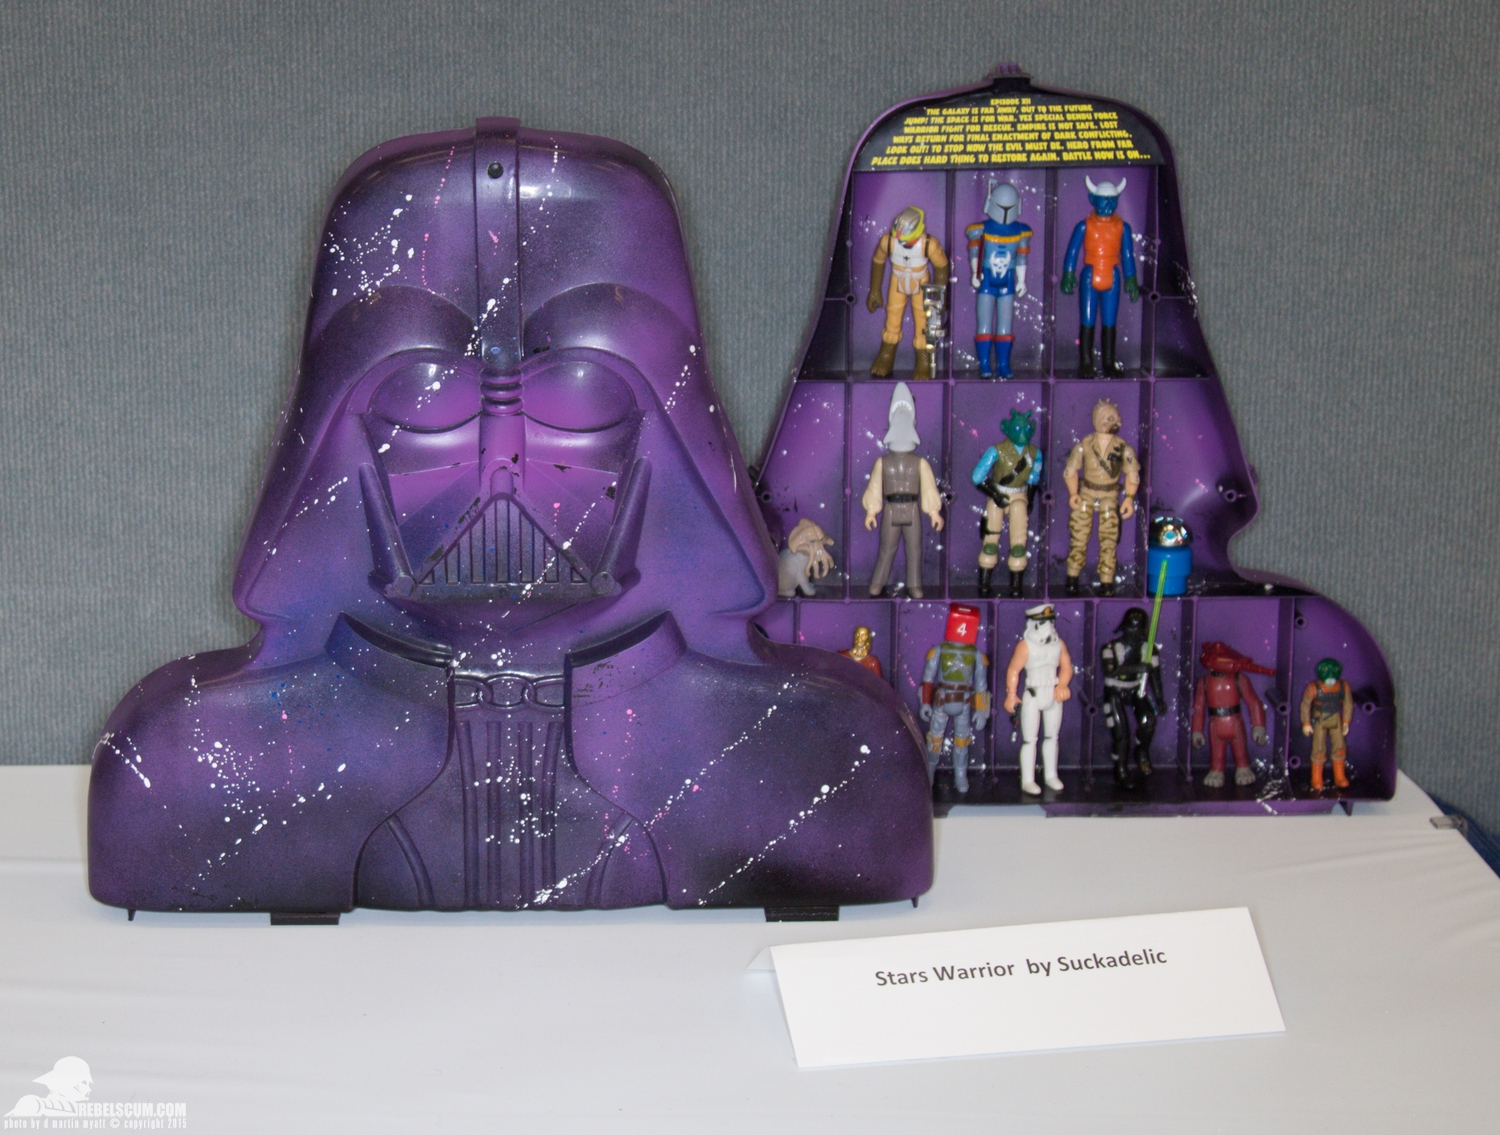 Star-Wars-Celebration-Anaheim-2015-Darth-Vader-Case-Project-012.jpg